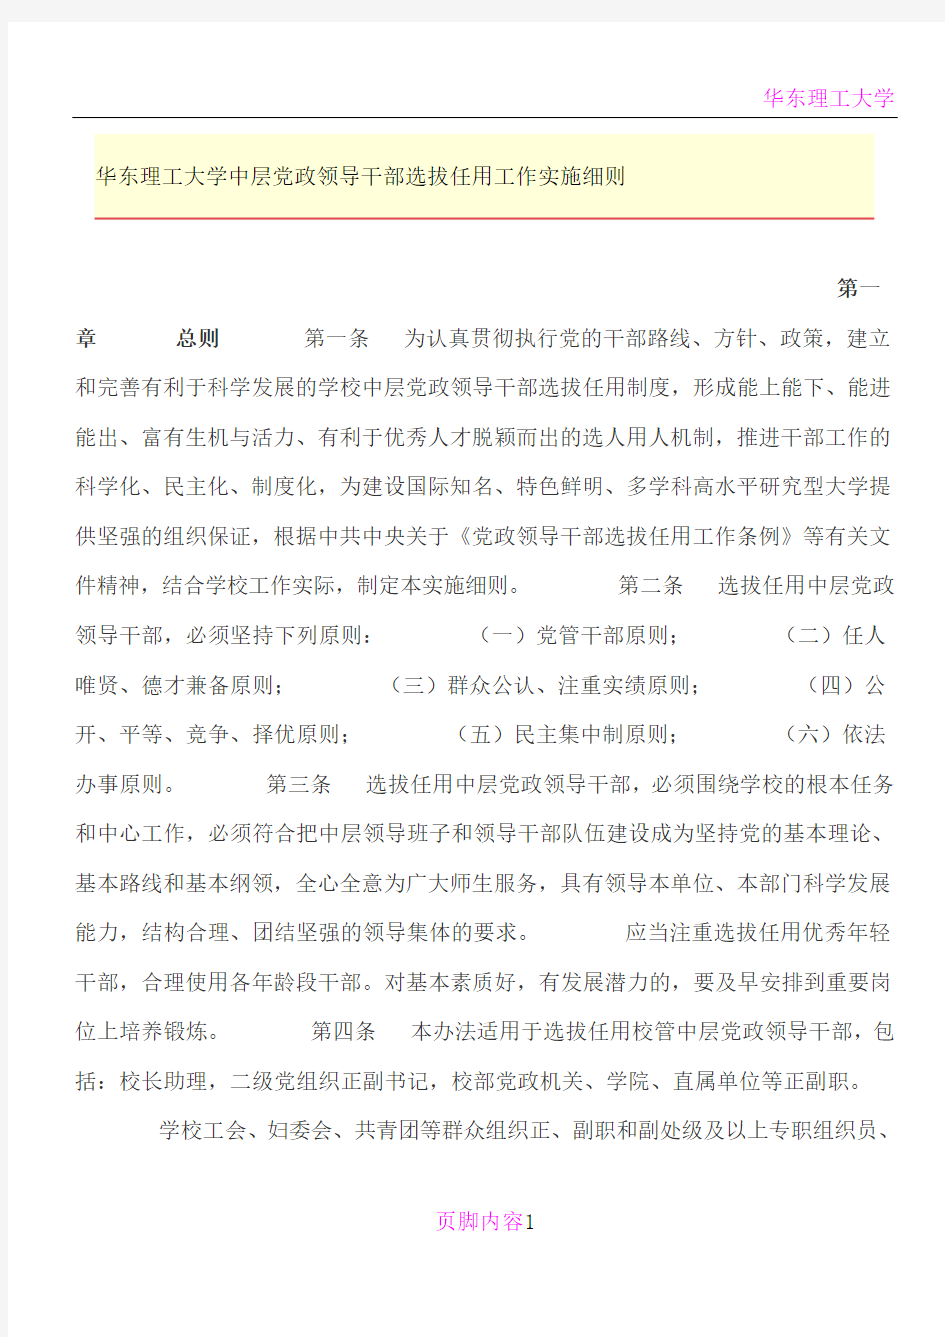 华东理工大学中层党政领导干部选拔任用工作实施细则